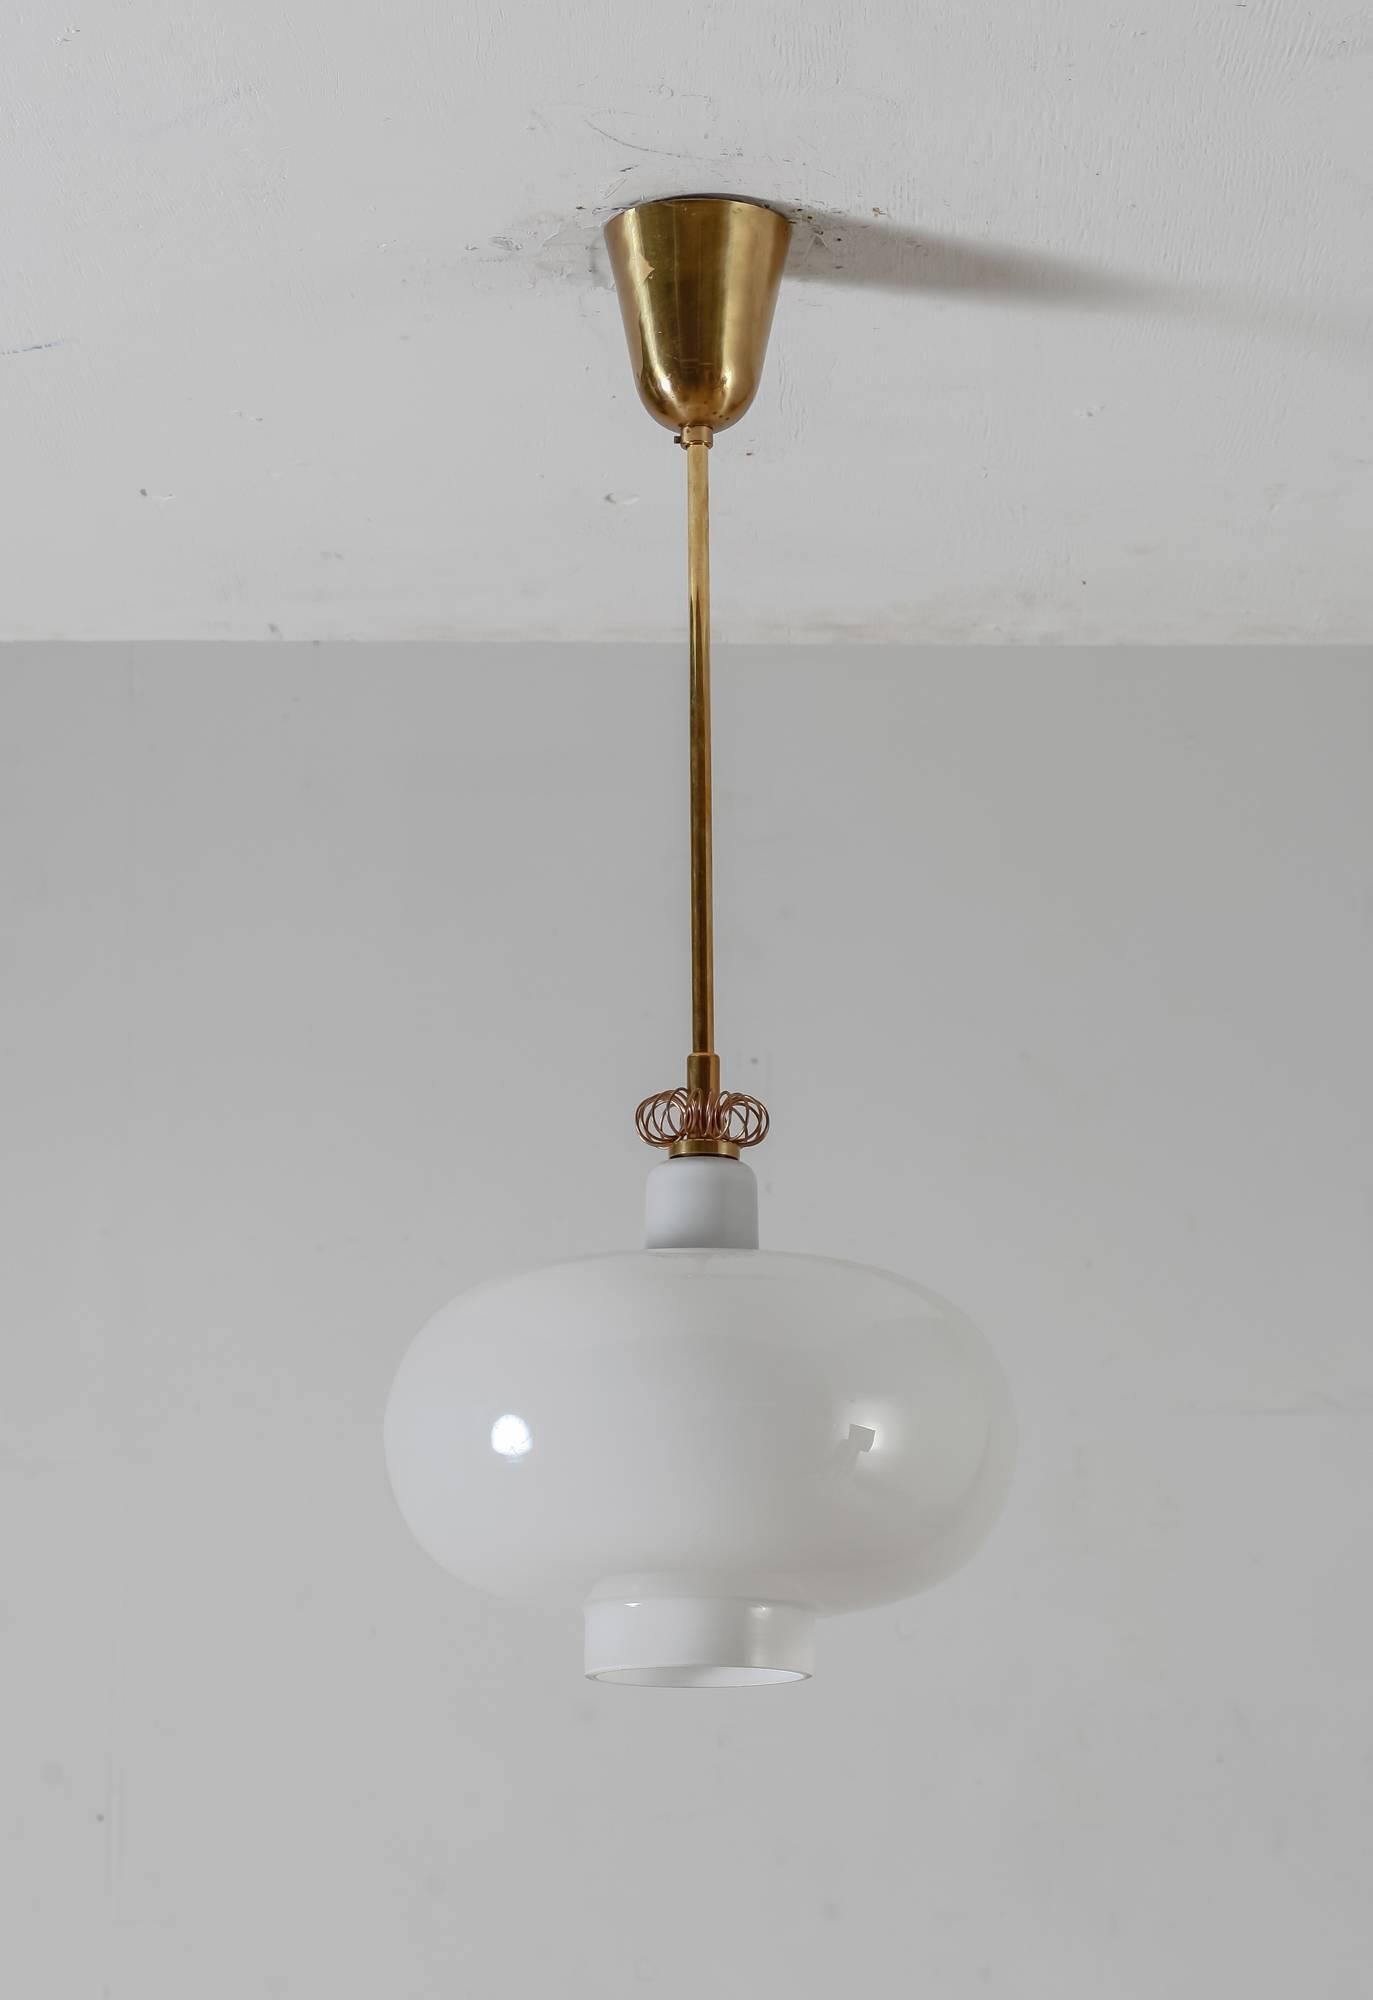 Scandinavian Modern Paavo Tynell K2-19 opaline glass and brass pendant, Idman, Finland, 1950s For Sale